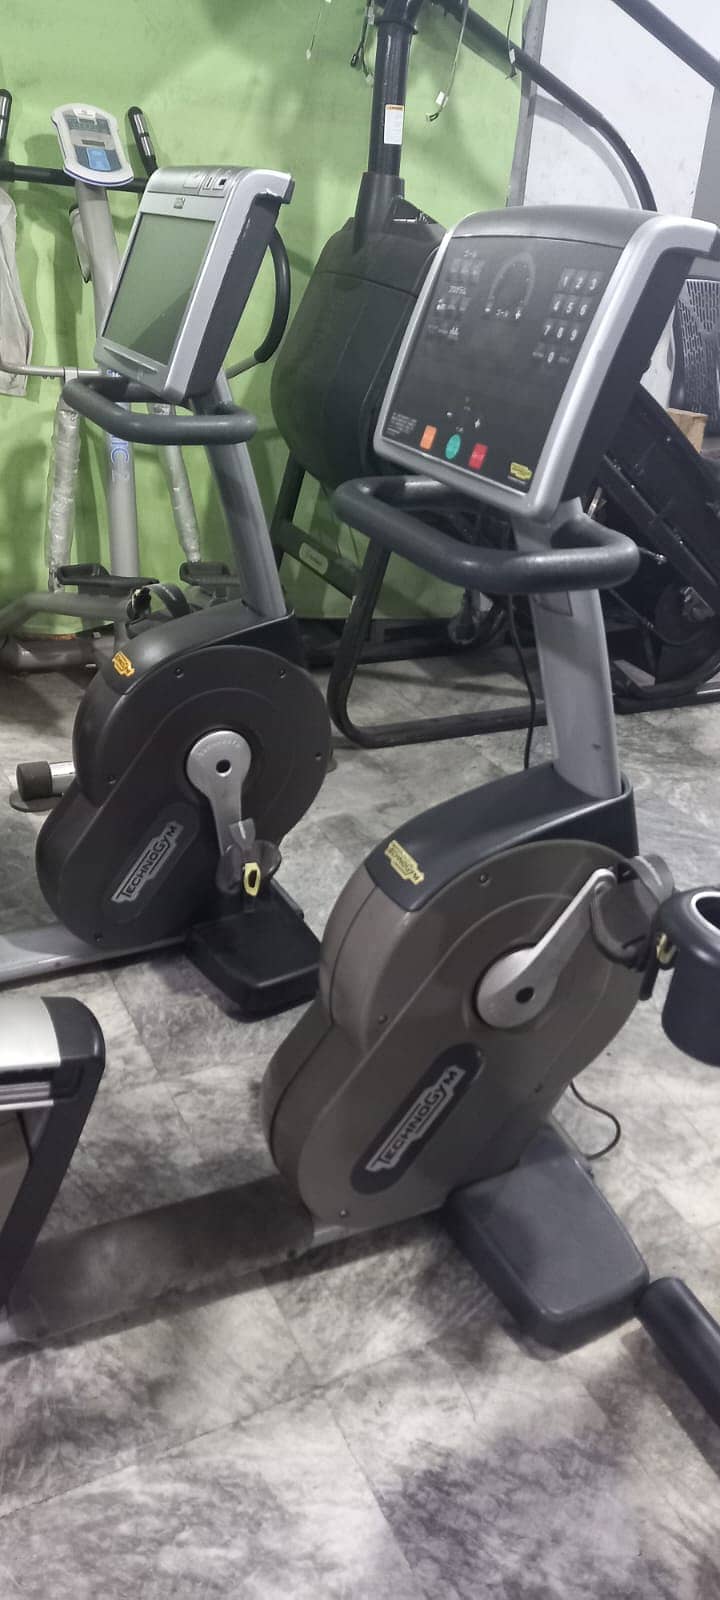 treadmills Technogym Refurbished Running Machine Ellipticals dumbbells 5